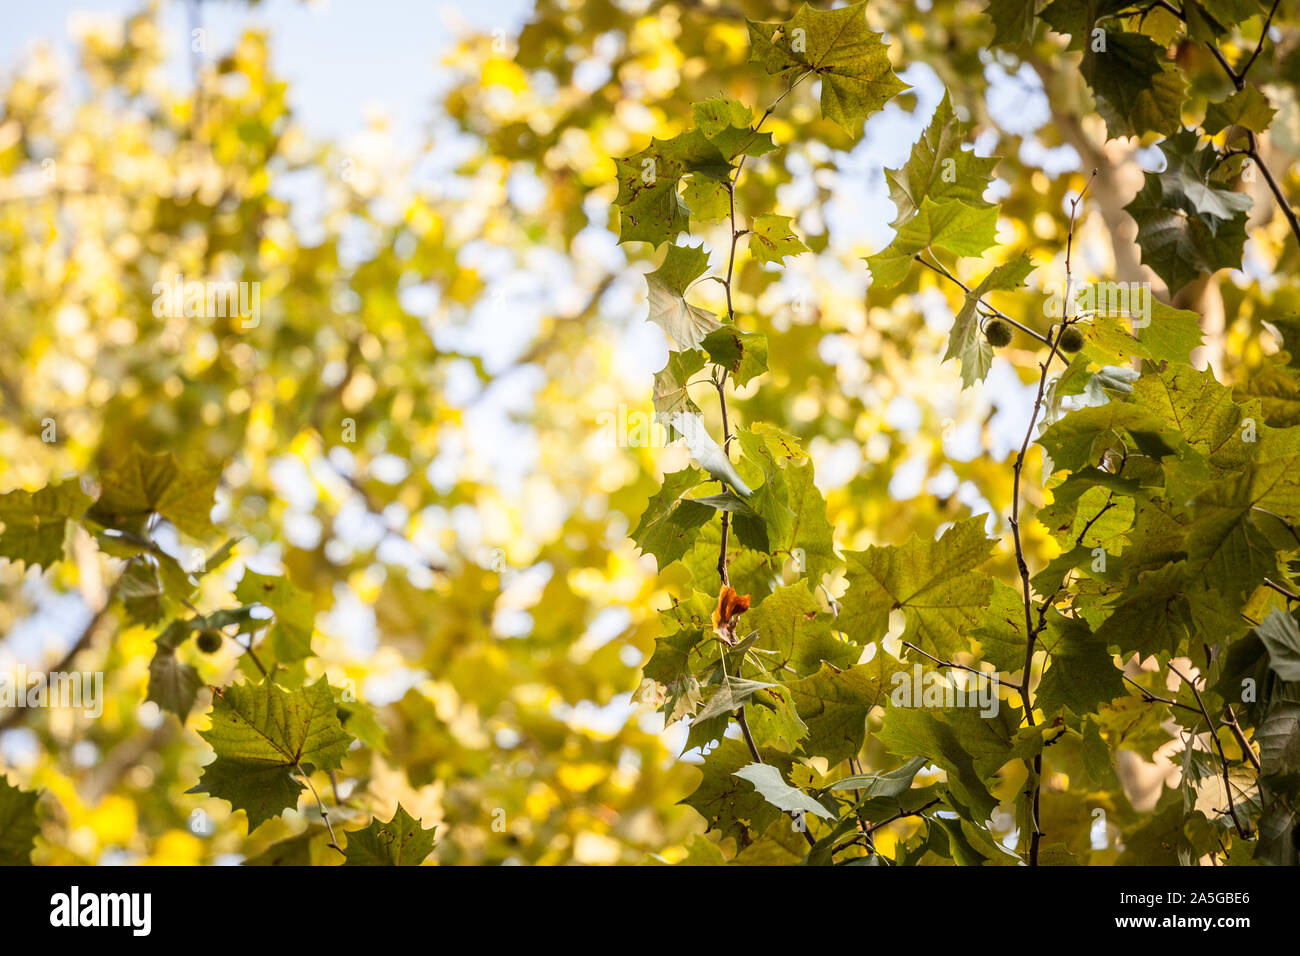 Close up sur un platane avec ses feuilles vertes et jaunes, à l'automne. Également connu sous le platane, Platanus, ou l'arbre est un symbole de l'automne dans le nord de l'il Banque D'Images